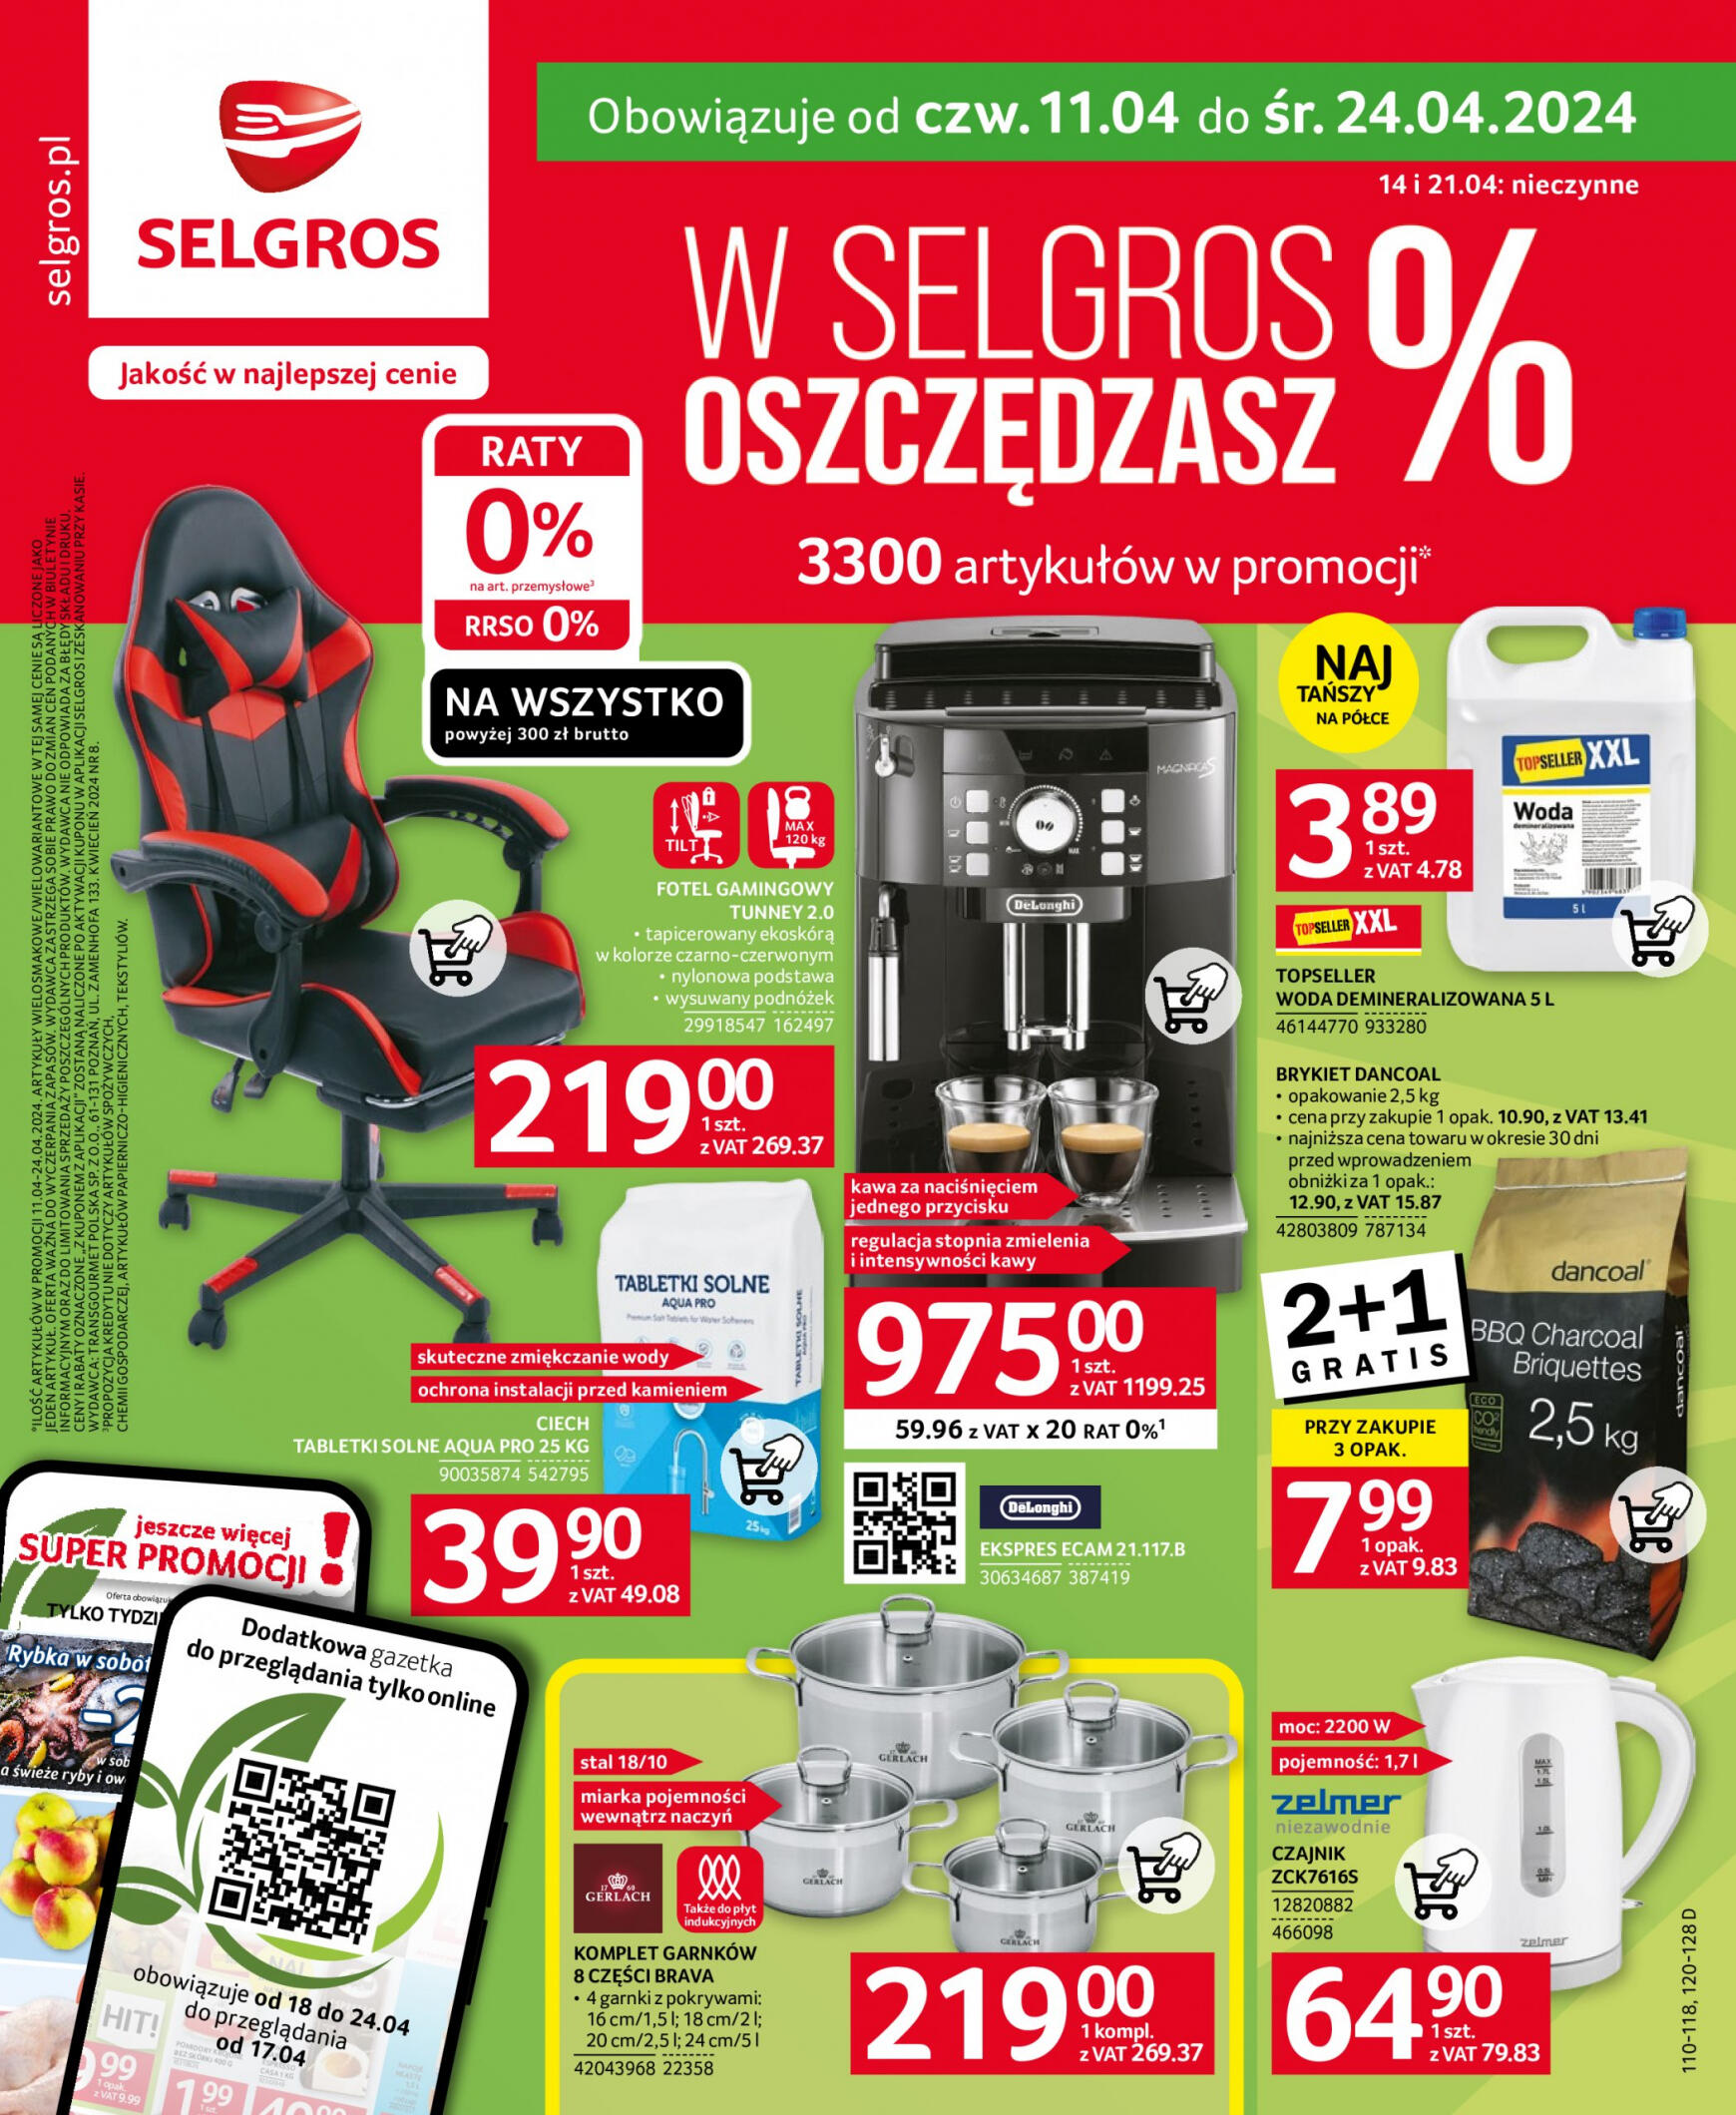 selgros - Selgros cash&carry - Oferta Przemysłowa gazetka aktualna ważna od 11.04. - 24.04.